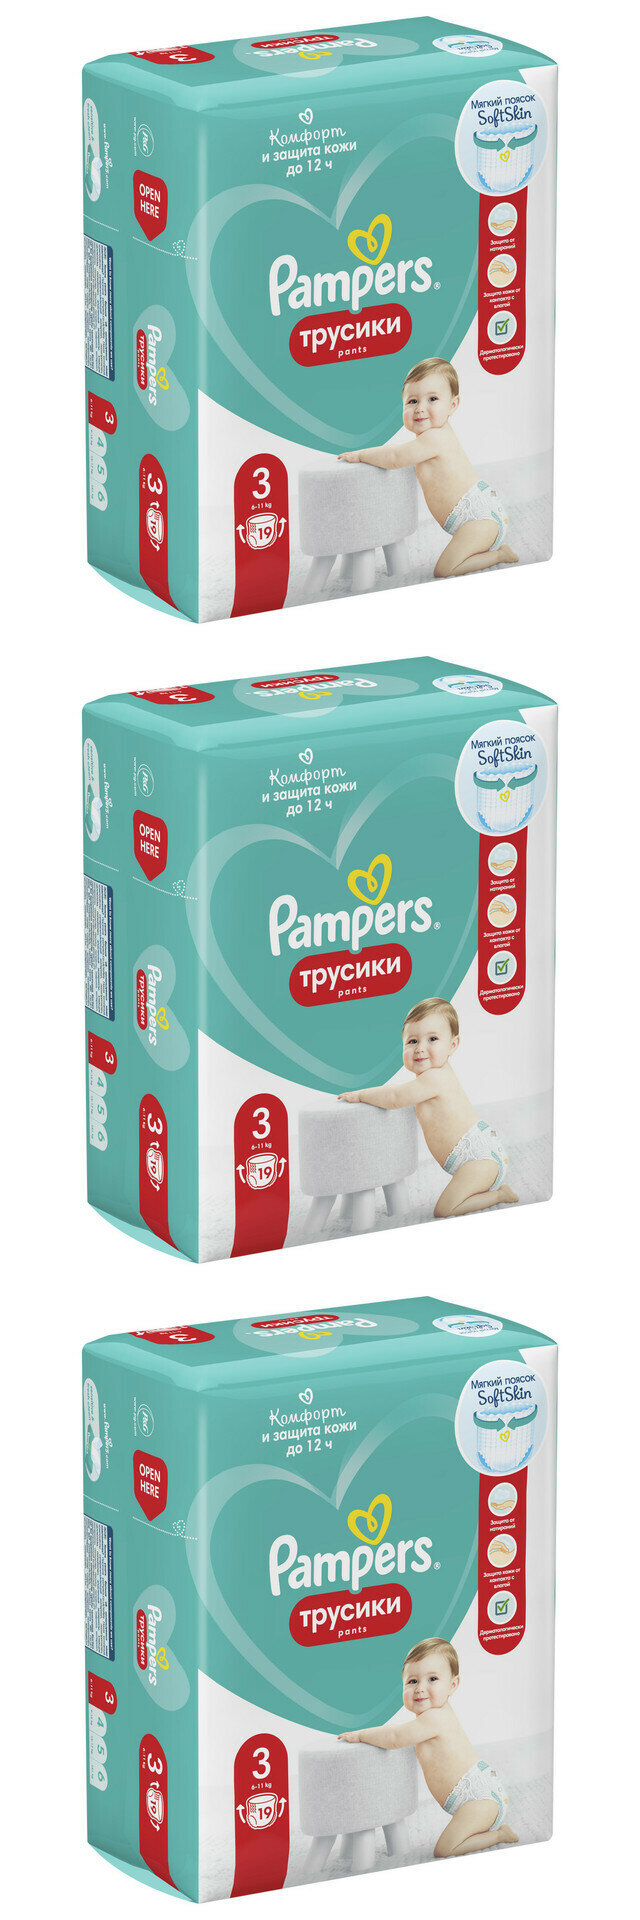 Pampers Подгузники-трусики детские Pants для малышей 6-11 кг, 3 размер, 19 шт, 3 упаковки